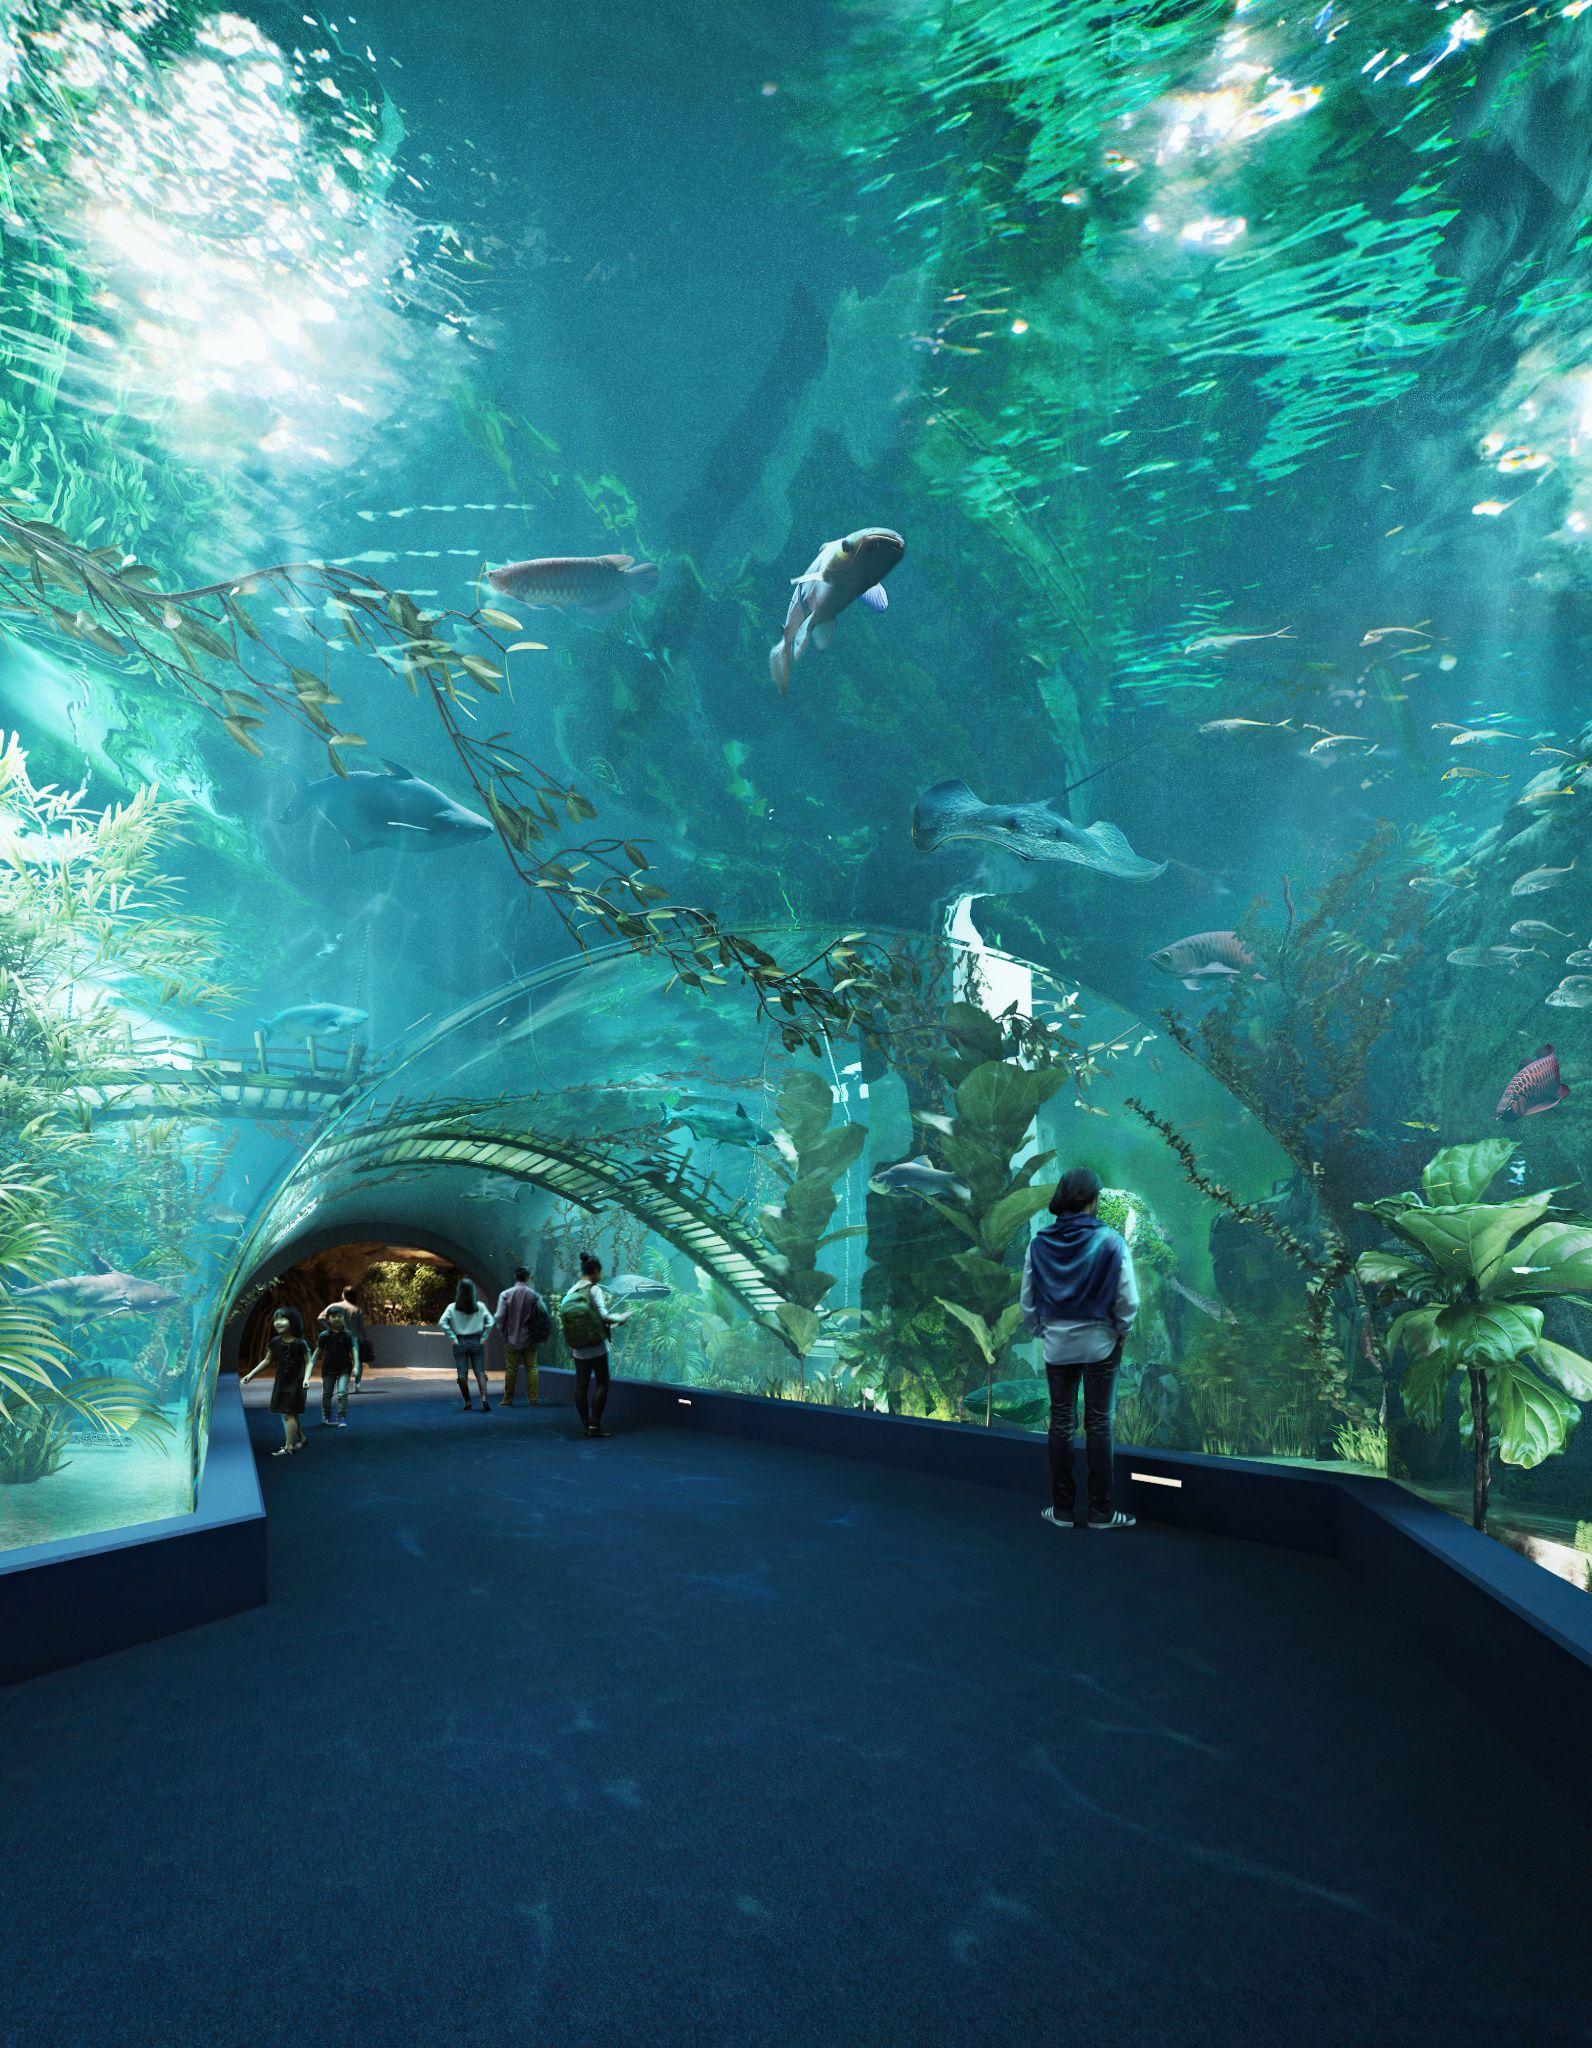 Thủy cung Lotte World Hà Nội - Thế giới đại dương đầy màu sắc sắp khai trương giữa lòng Thủ đô - Ảnh 3.